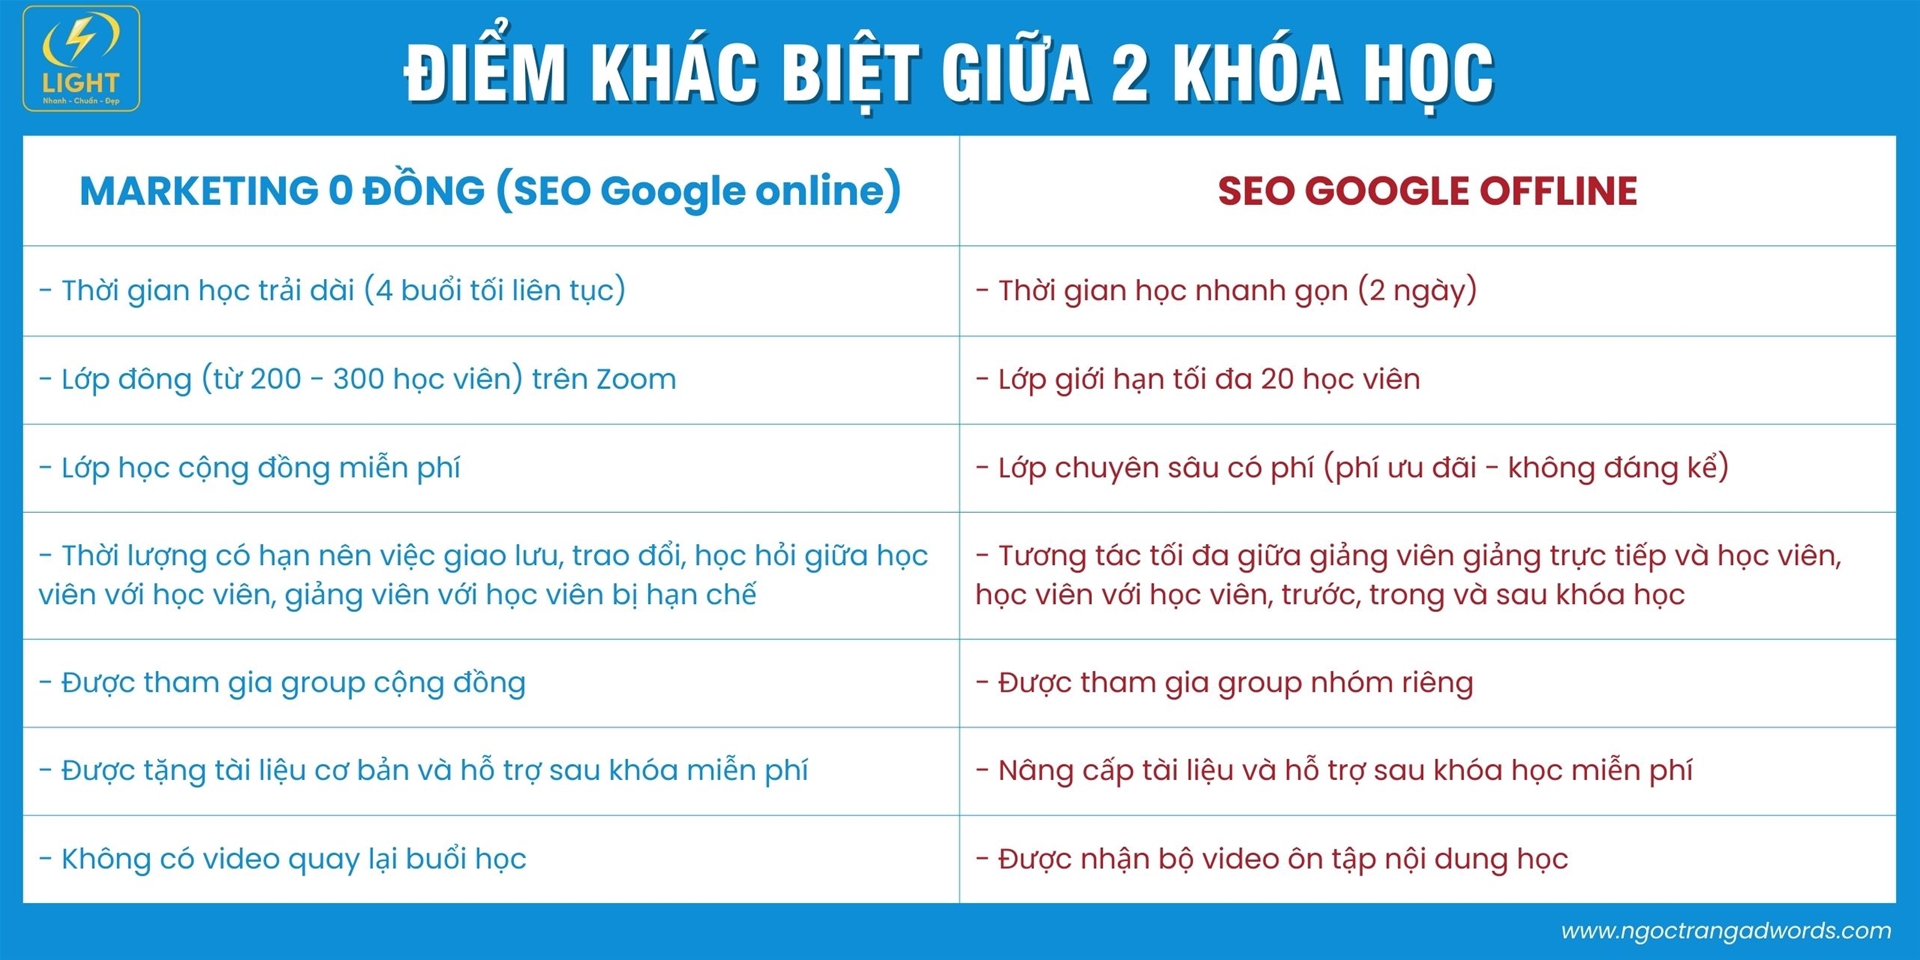 Khoá học Google Ads tại Hà Nội và Hồ Chí Minh